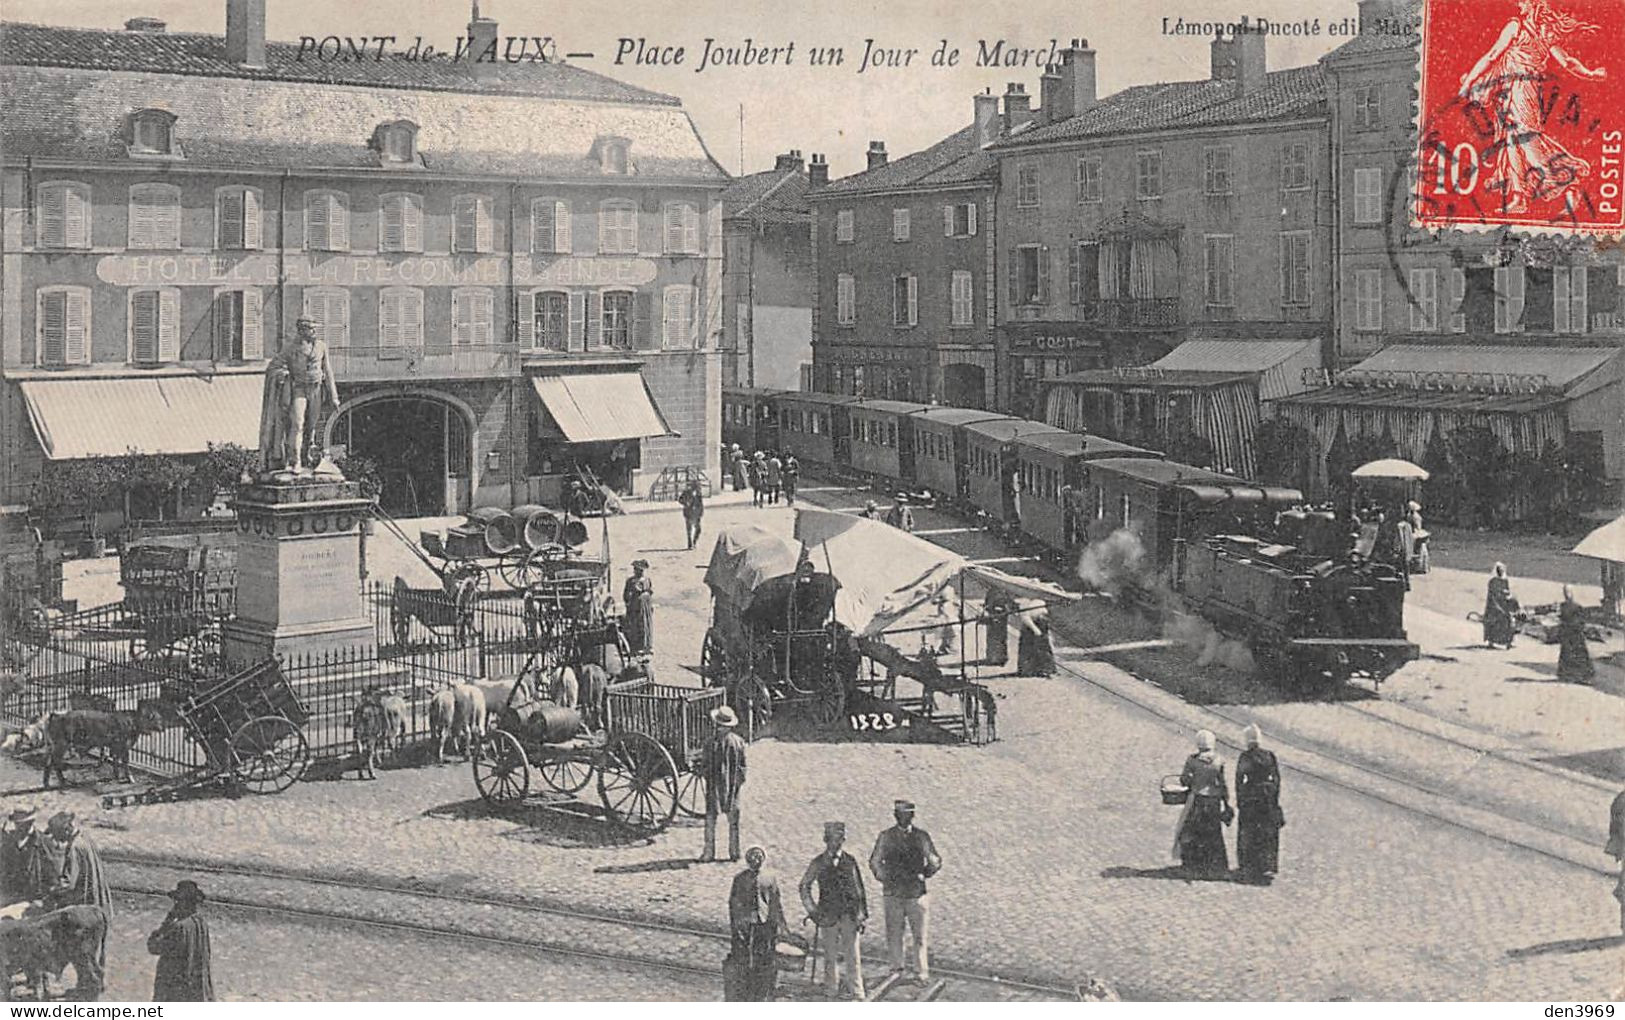 PONT-de-VAUX (Ain) - Place Joubert Un Jour De Marché - Tramway - Voyagé 1909 (2 Scans) - Pont-de-Vaux